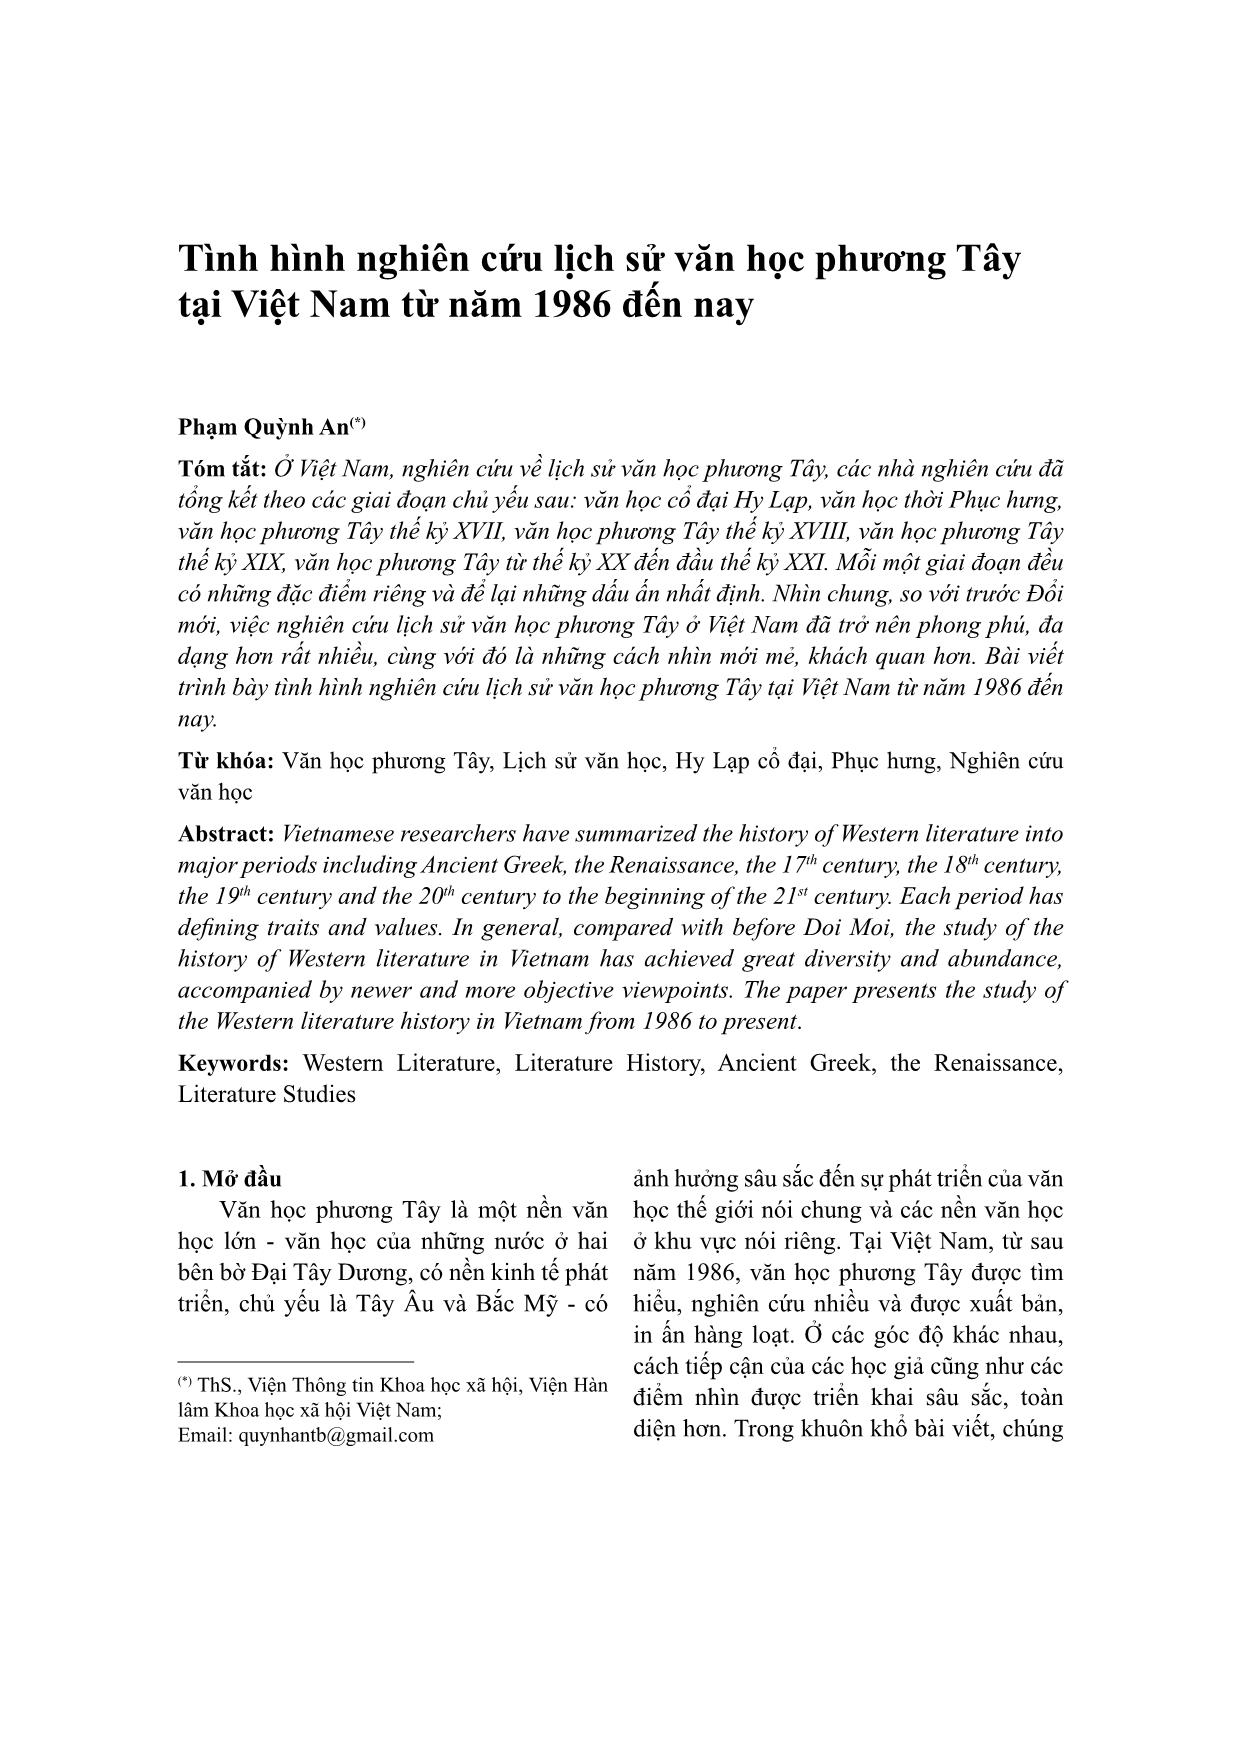 Tình hình nghiên cứu lịch sử văn học phương Tây tại Việt Nam từ năm 1986 đến nay trang 1